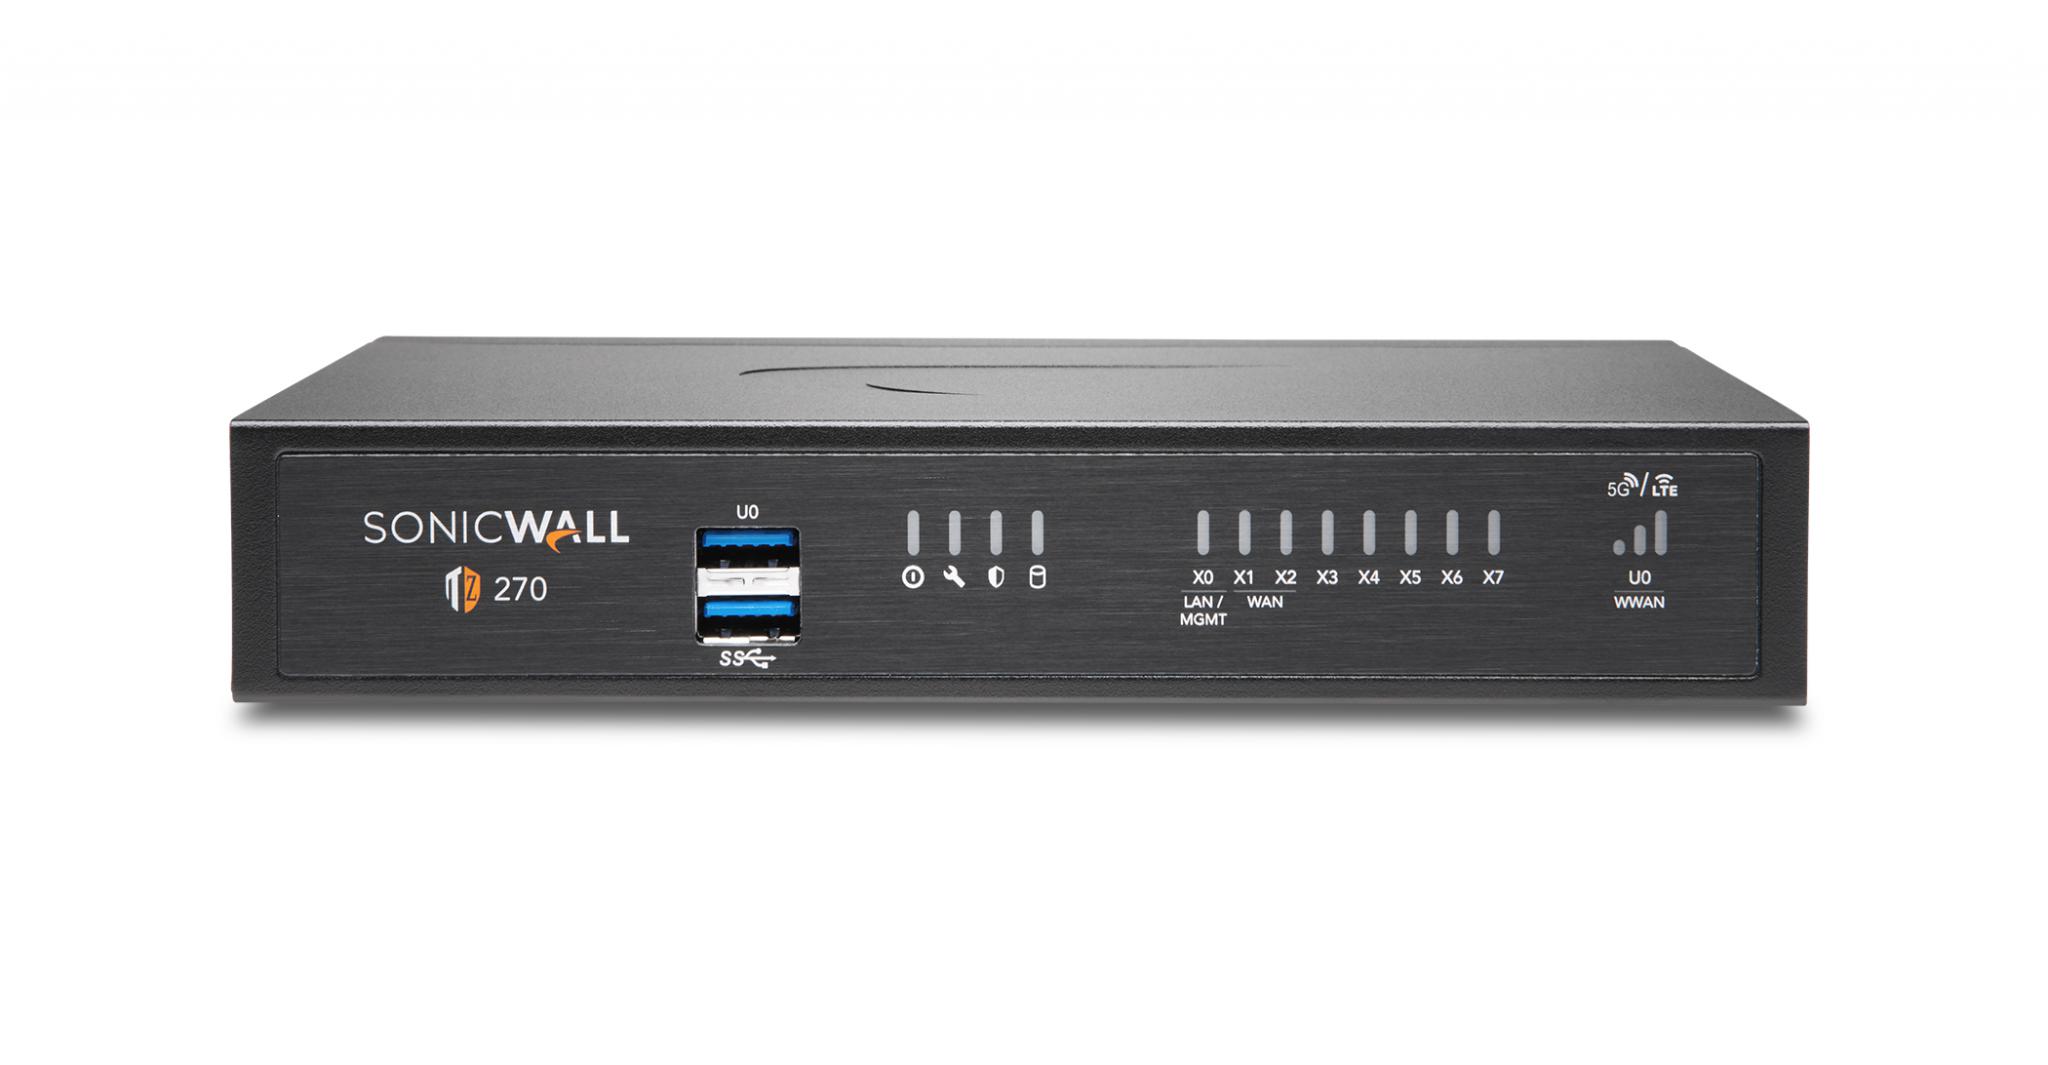 Firewall SonicWall model TZ270 8xGbE 2xUSB 3.0 firewall throughput 2Gbps, IPS throughput 1Gbps, VPN throughput 750Mbps, maxim 50 clienti SSL VPN, rackmount kit separat (02-SSC-3113), PSU alimentator (36W), licenta Total Secure Advanced Edition (capture advanced threat, gateway antivirus